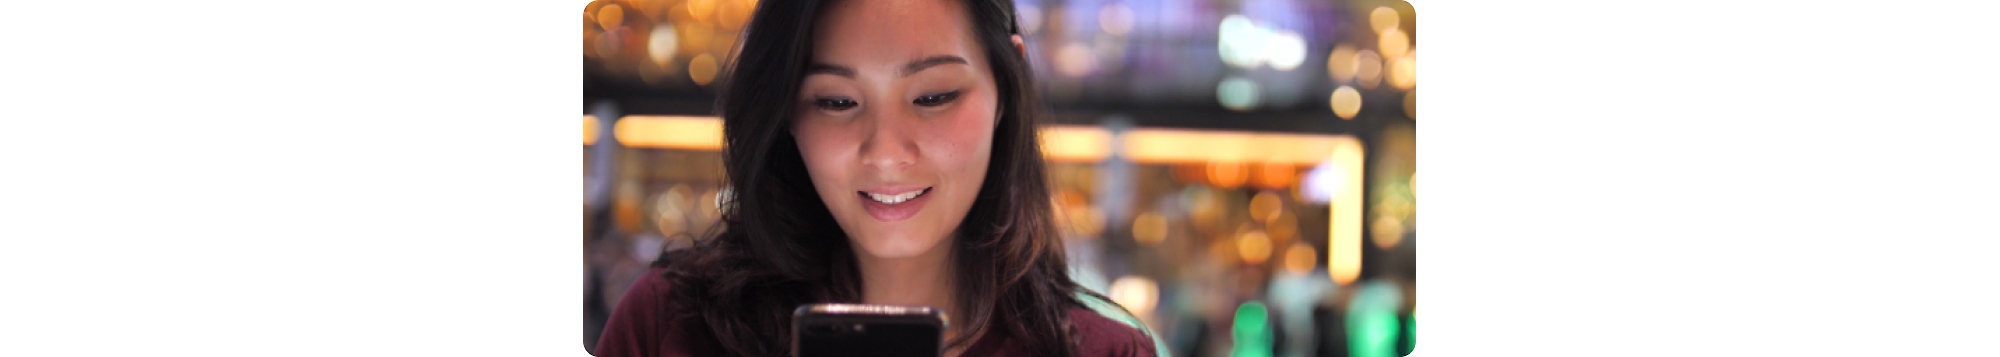 携帯電話を見ている若いアジア系女性。